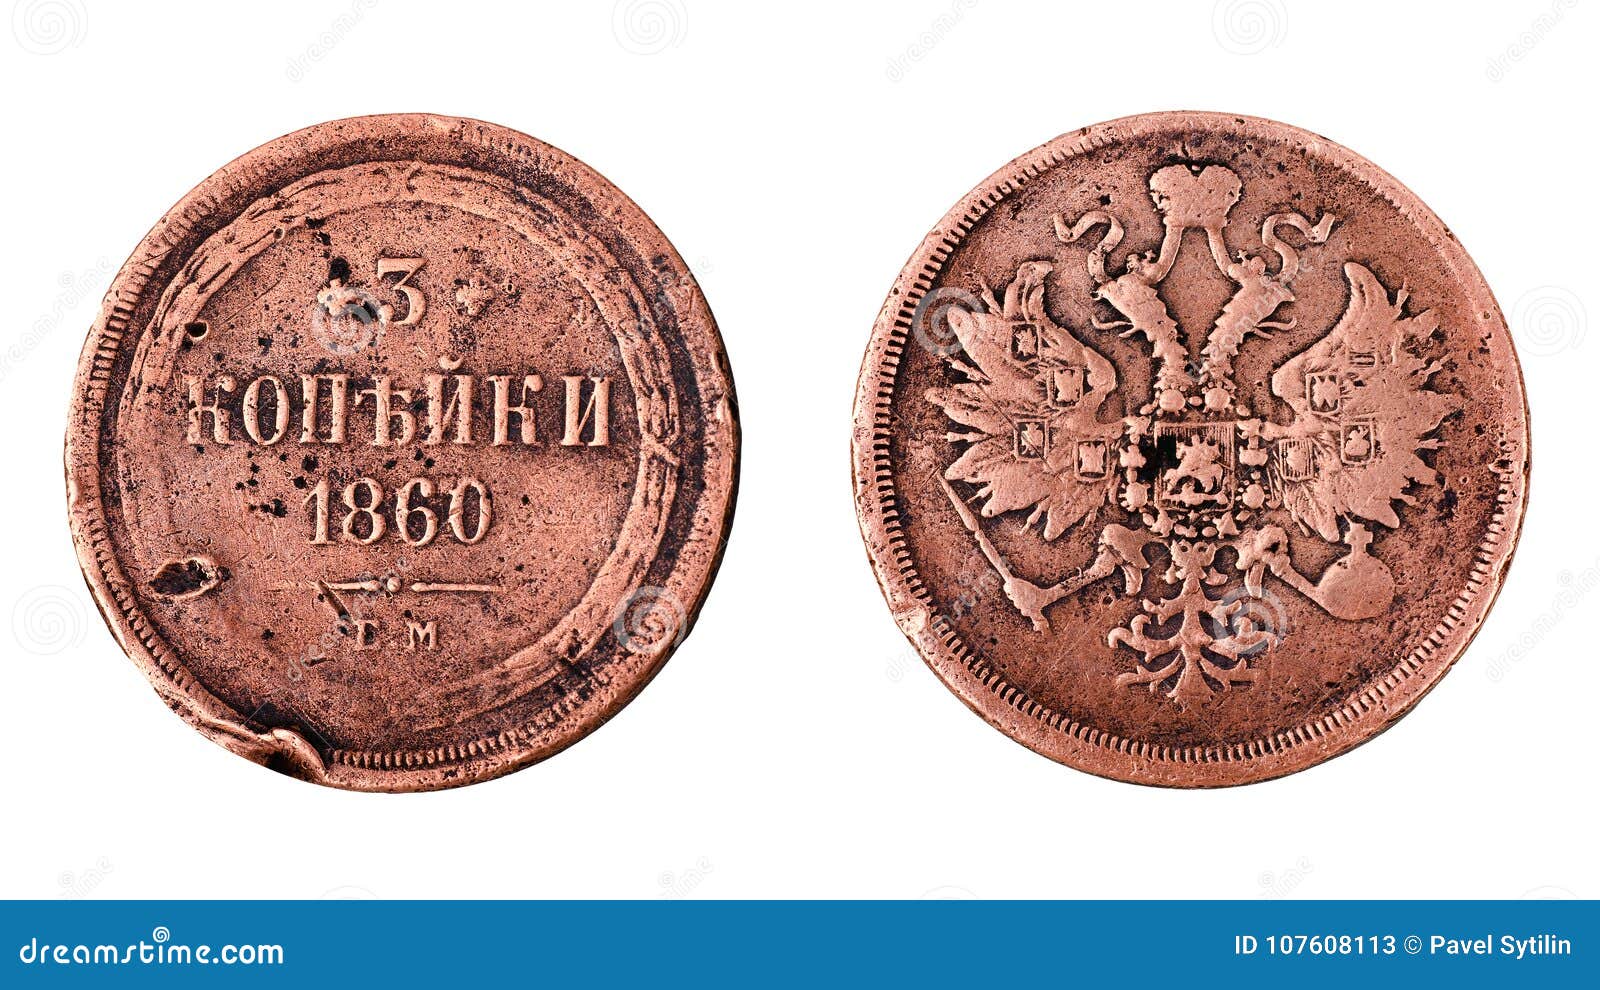 copper coin of the russian empire 3 kopecks 1860